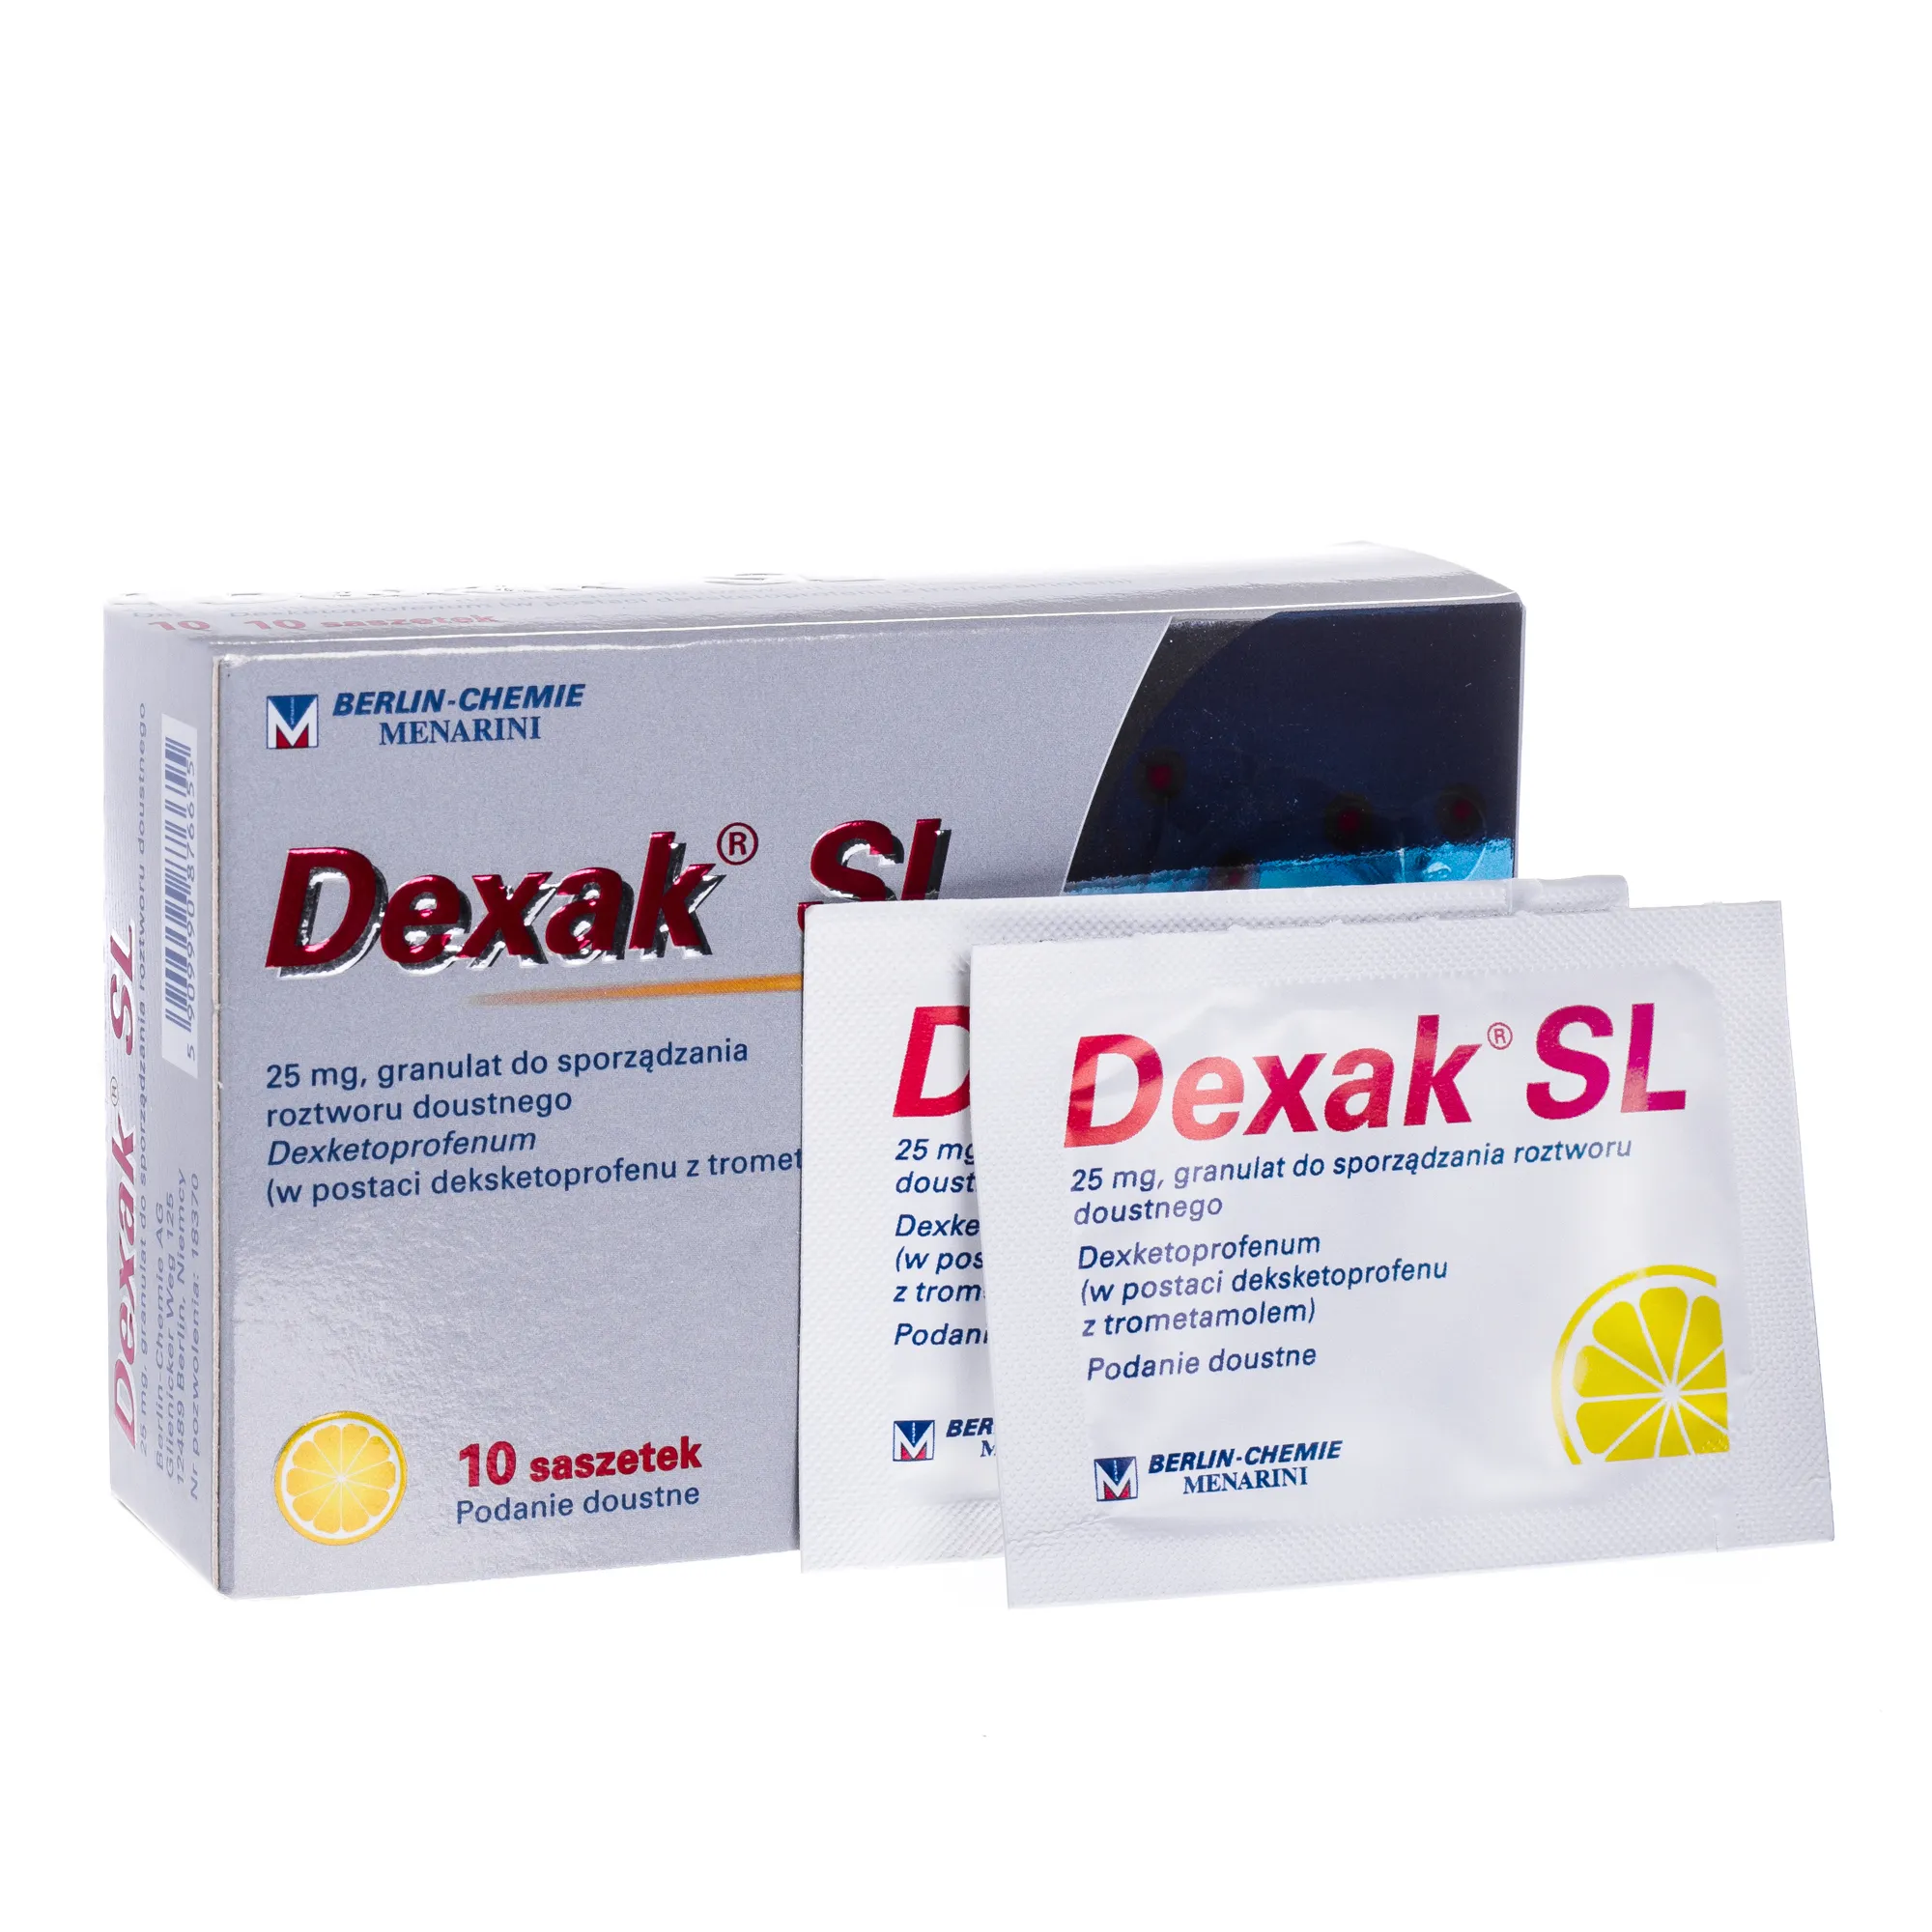 Dexak SL, 25 mg, lek stosowany u dorosłych przy bólach łagodnym i umiarkowanym nasileniu, 10 saszetek